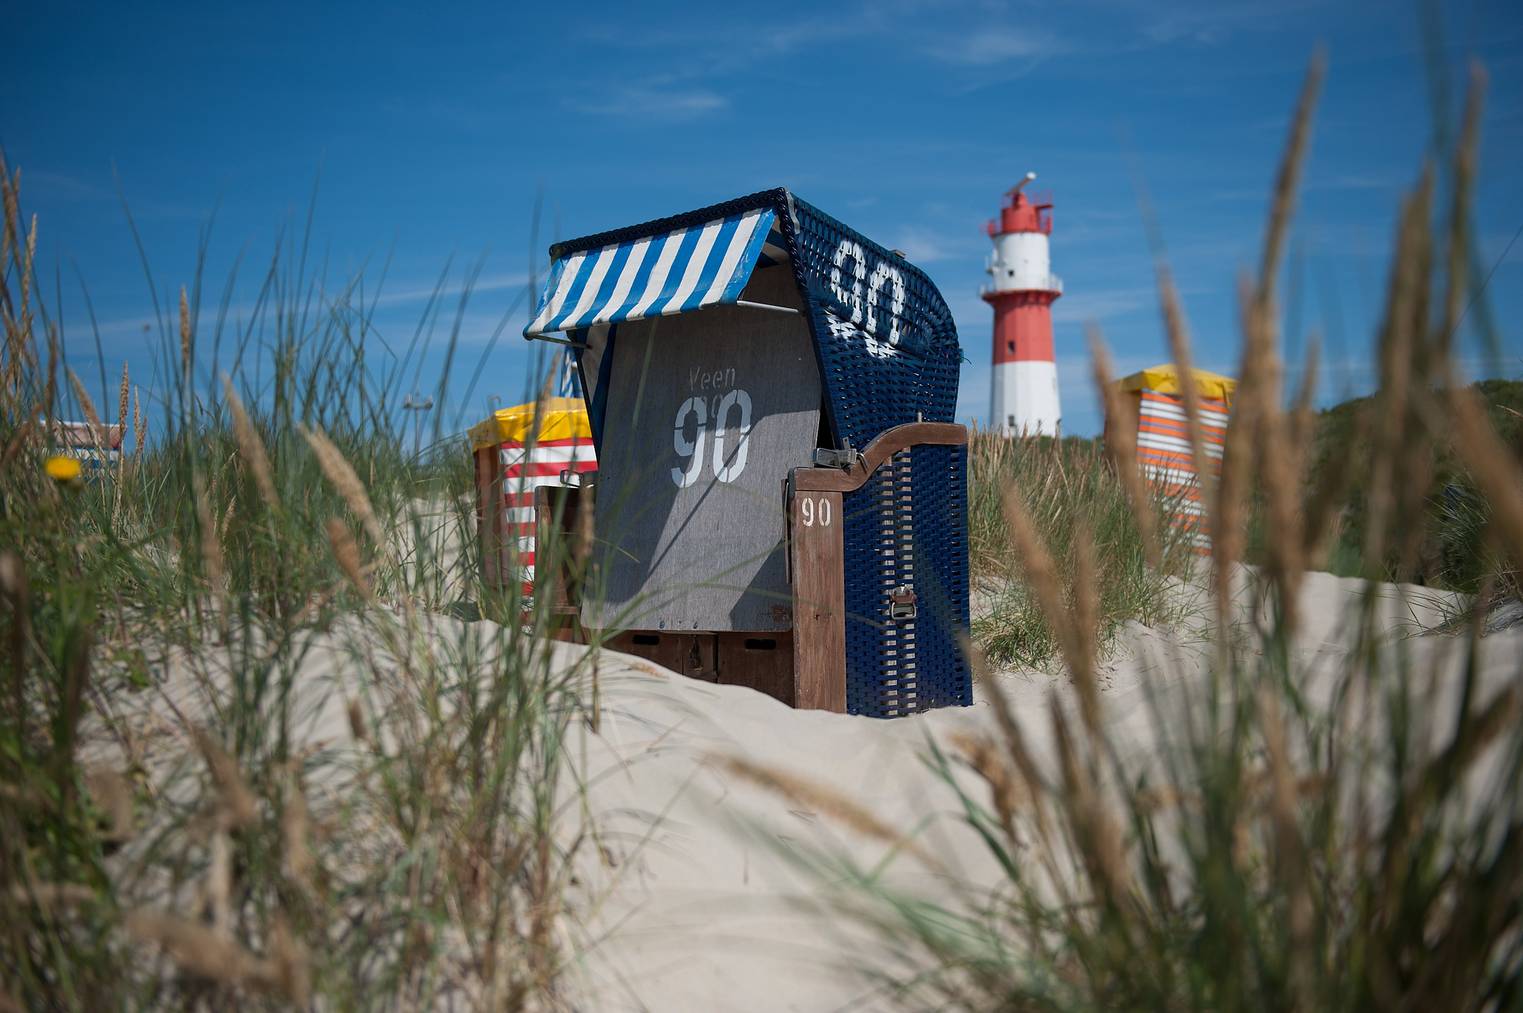 Entspannen in den typischen Strandkörben auf Borkum. (David Hecker/Getty Images)